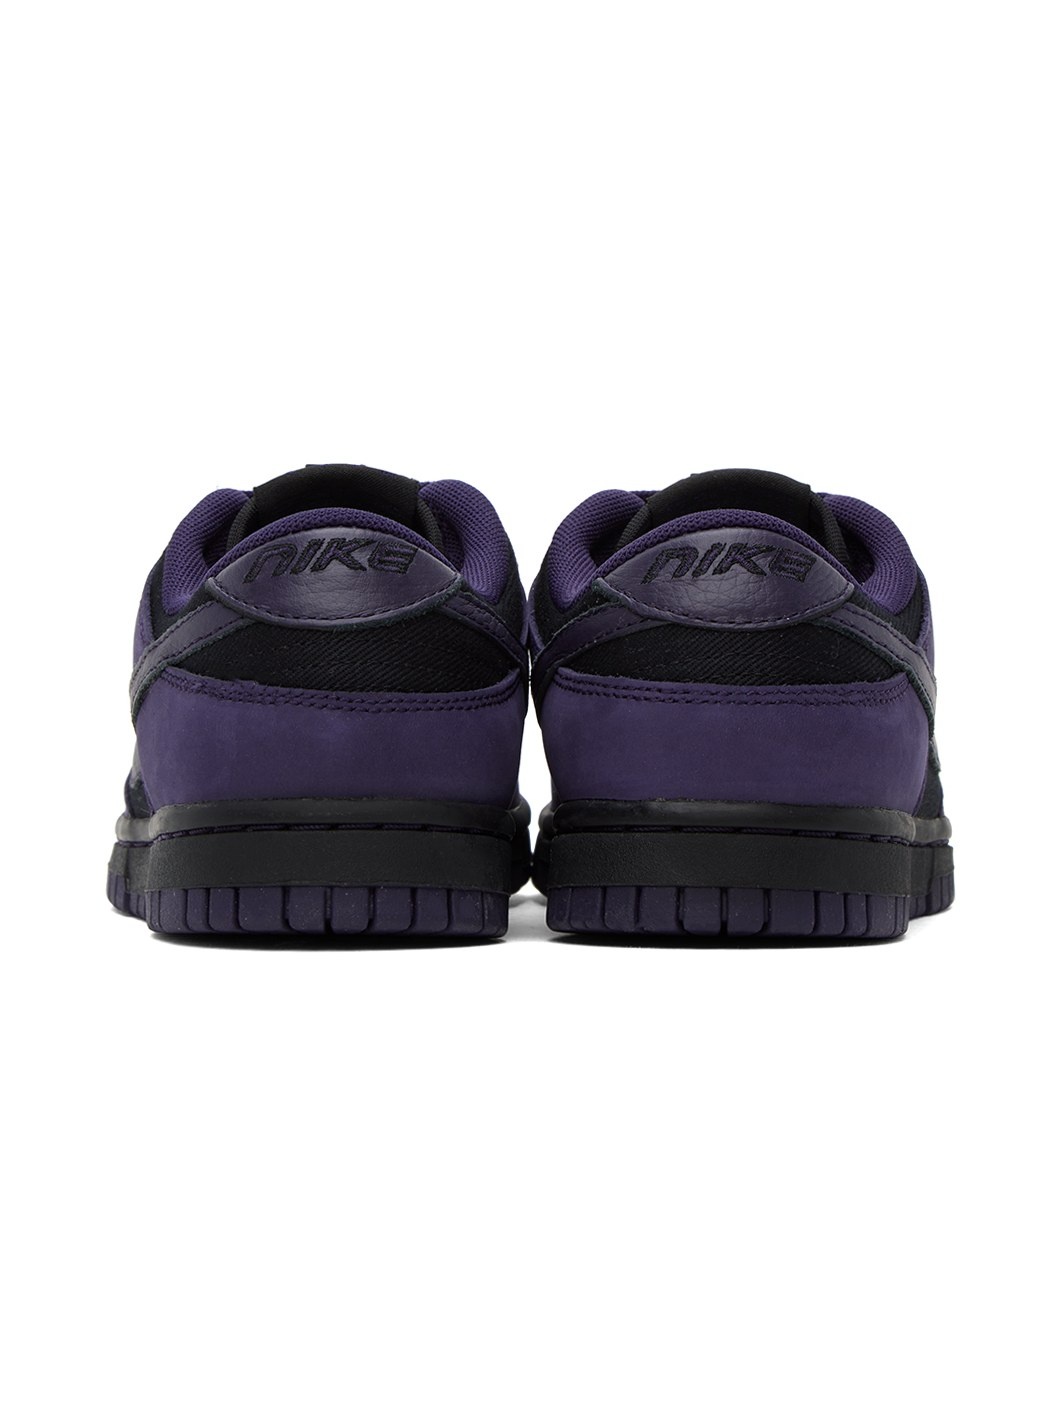 Purple & Black Dunk Low LX Sneakers - 2